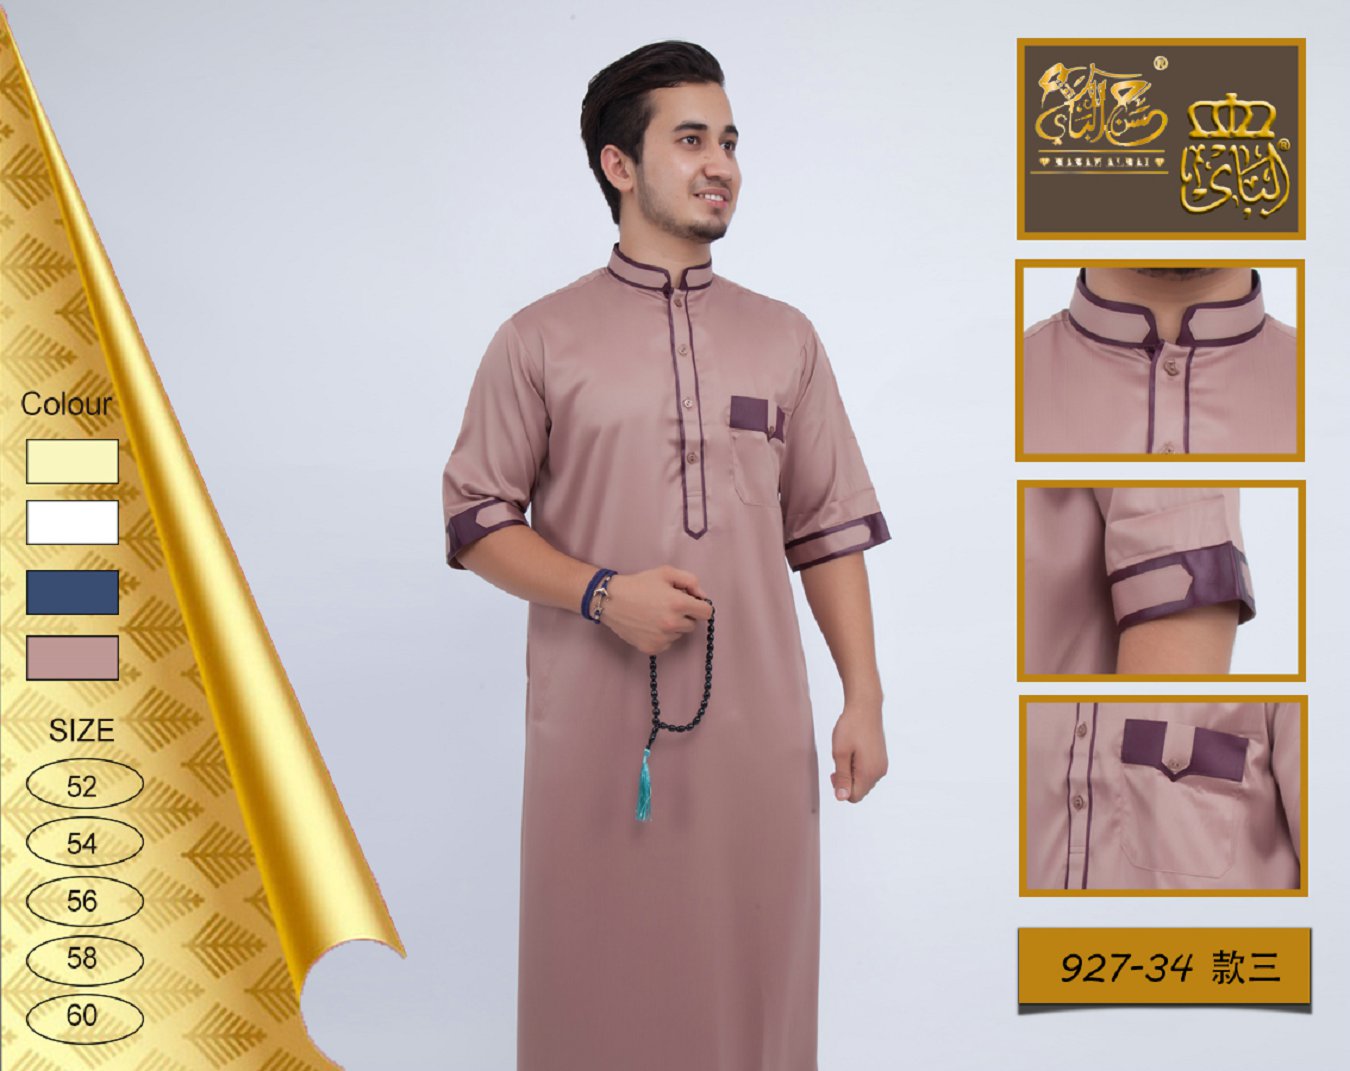 科威特袍1